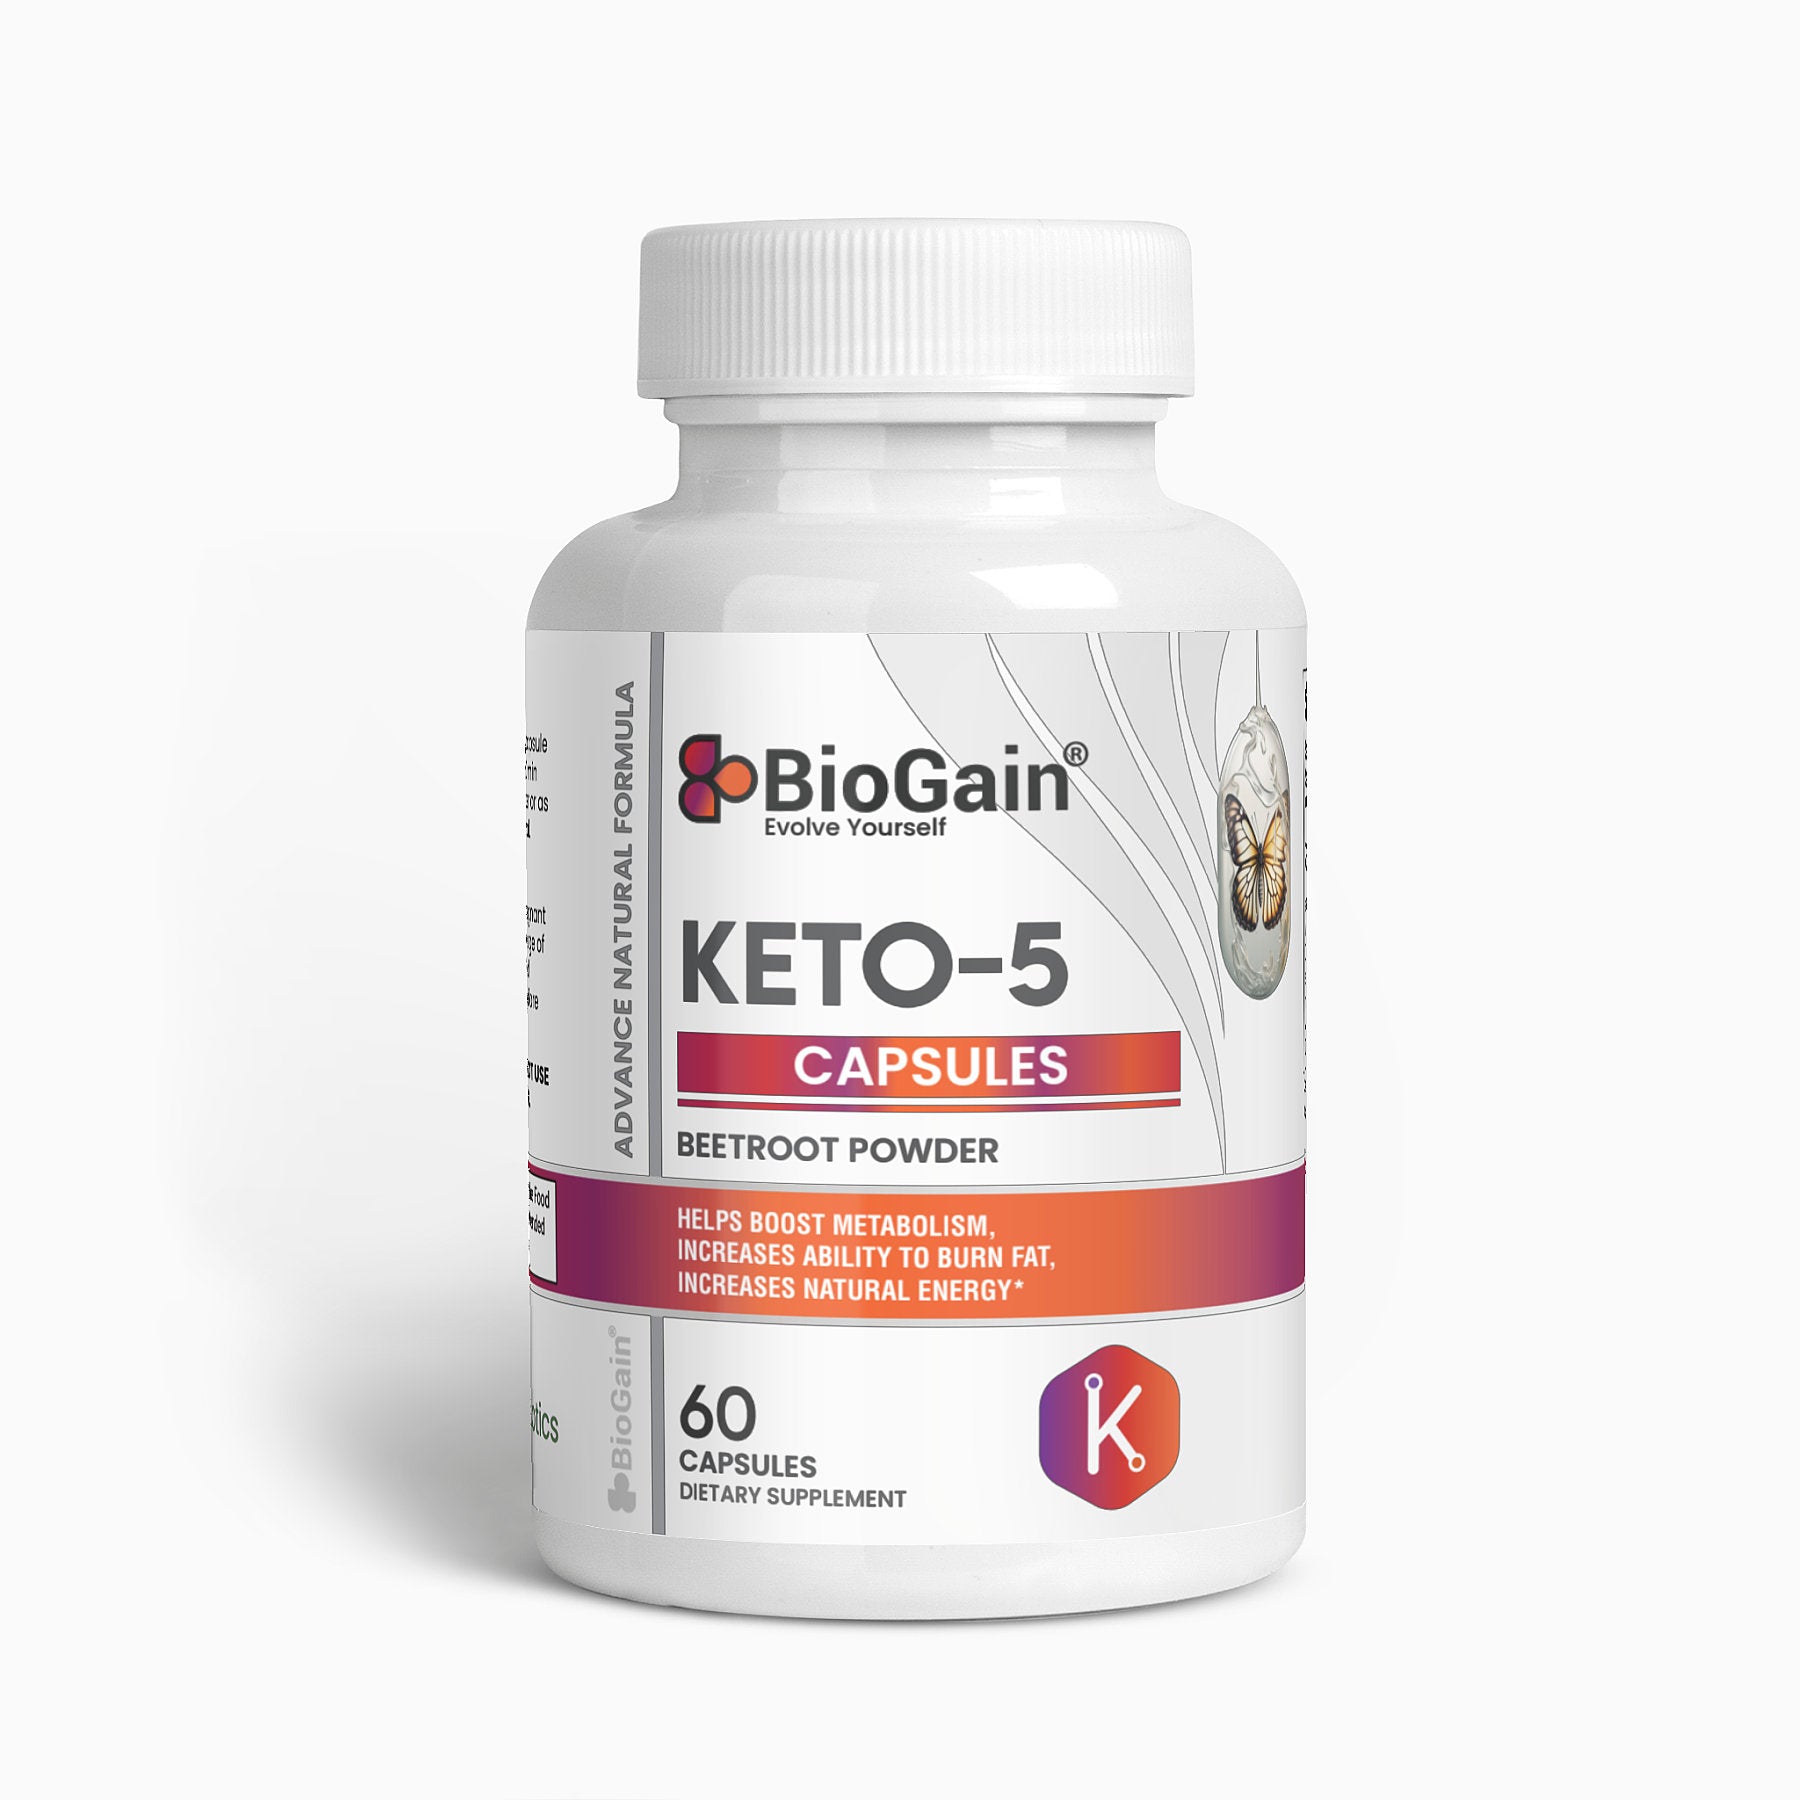 BioGain® Keto-5 Evolution Capsules